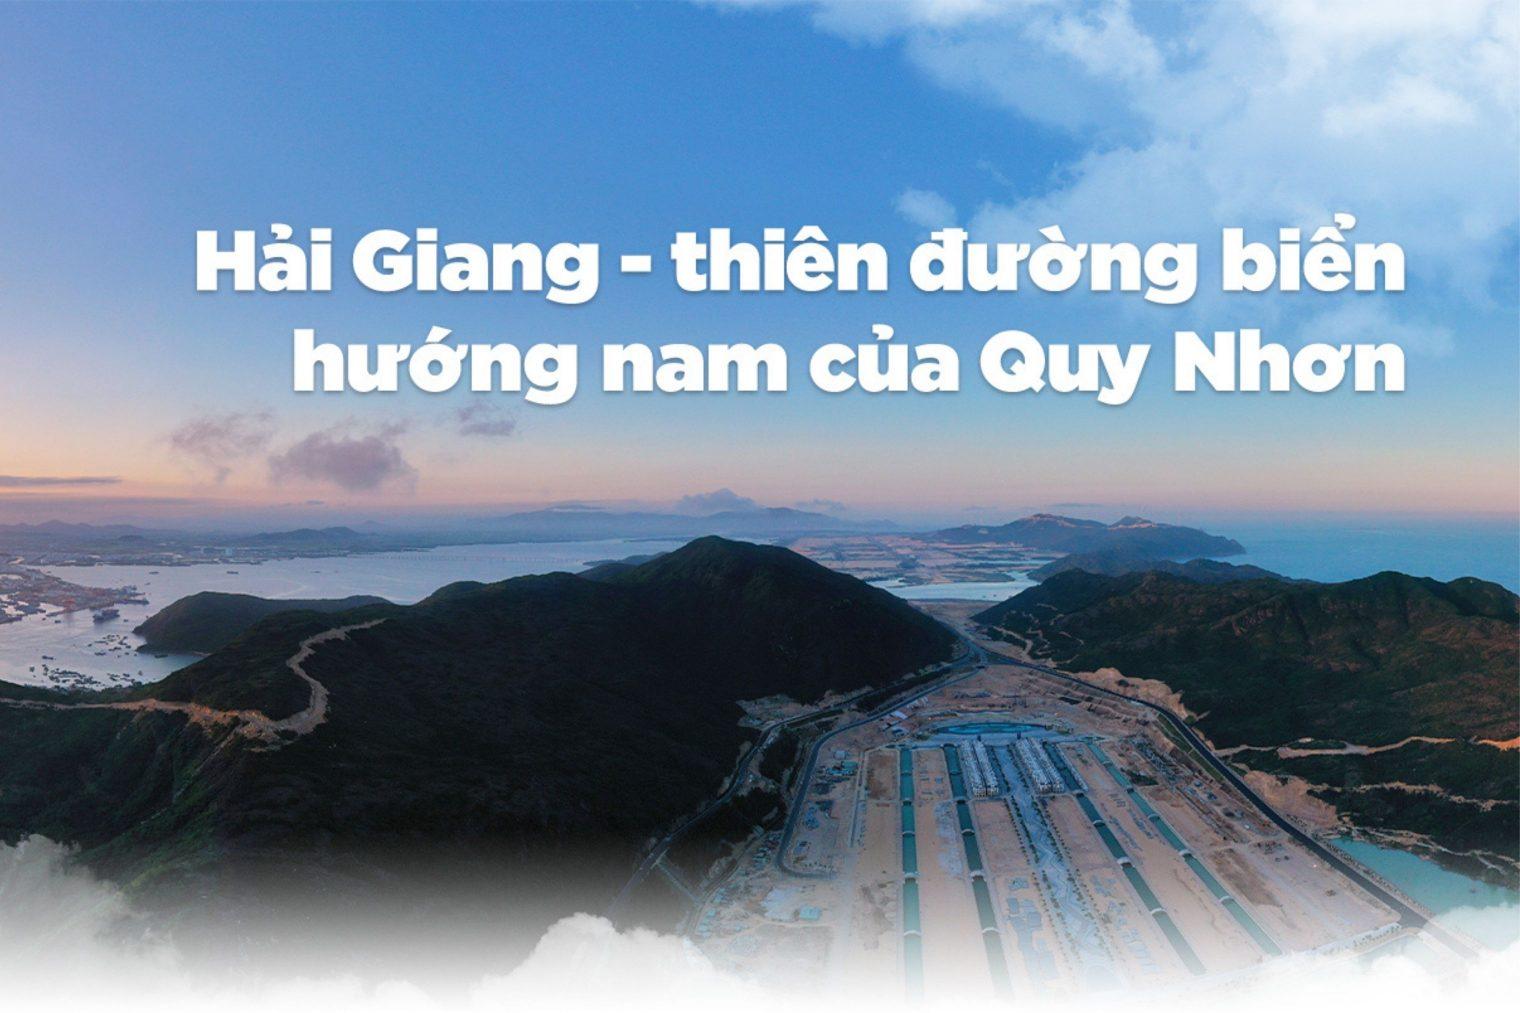 You are currently viewing Hải Giang – Thiên đường biển hướng nam của Quy Nhơn